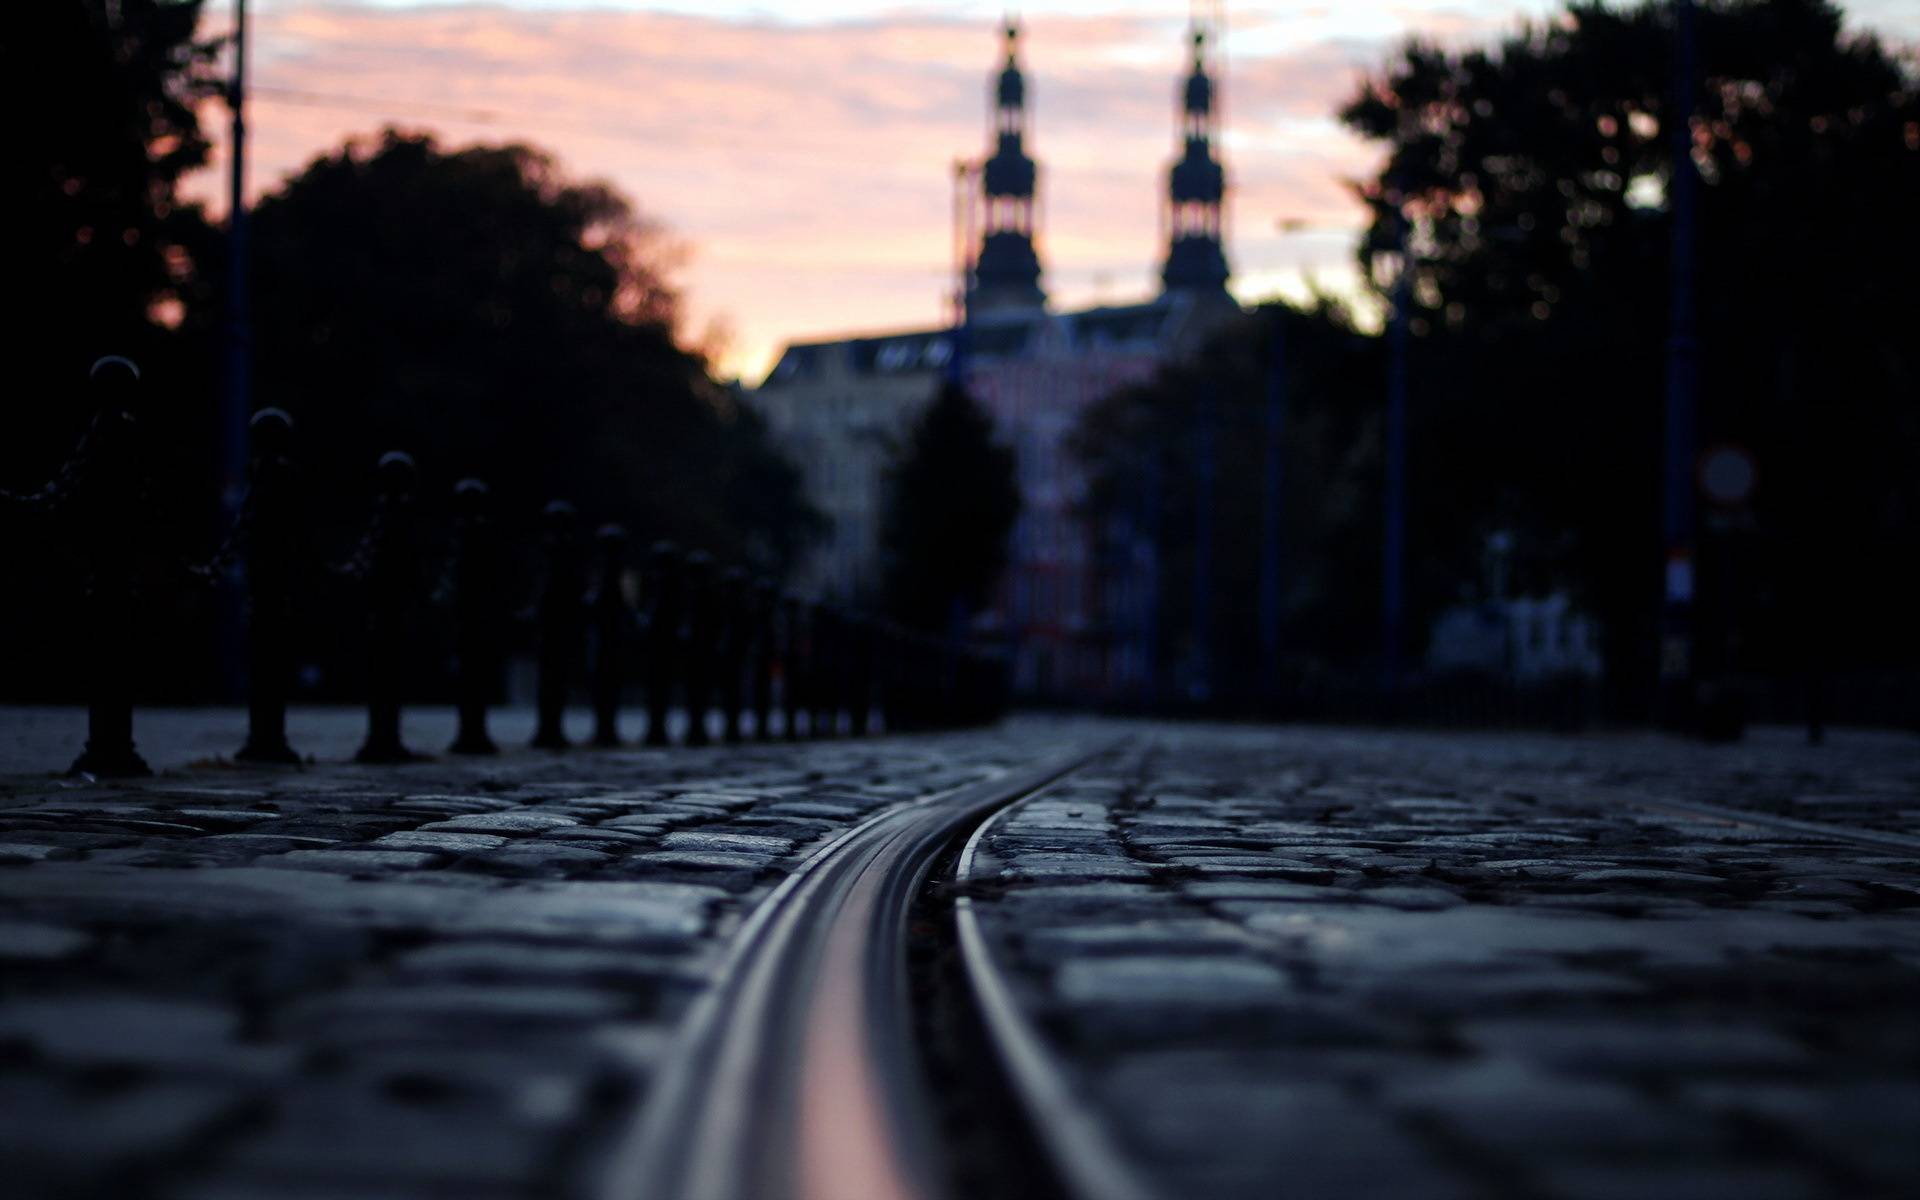 Ще на двох перехрестях у Вінниці з’явиться «оксамитовий шлях» для трамваїв